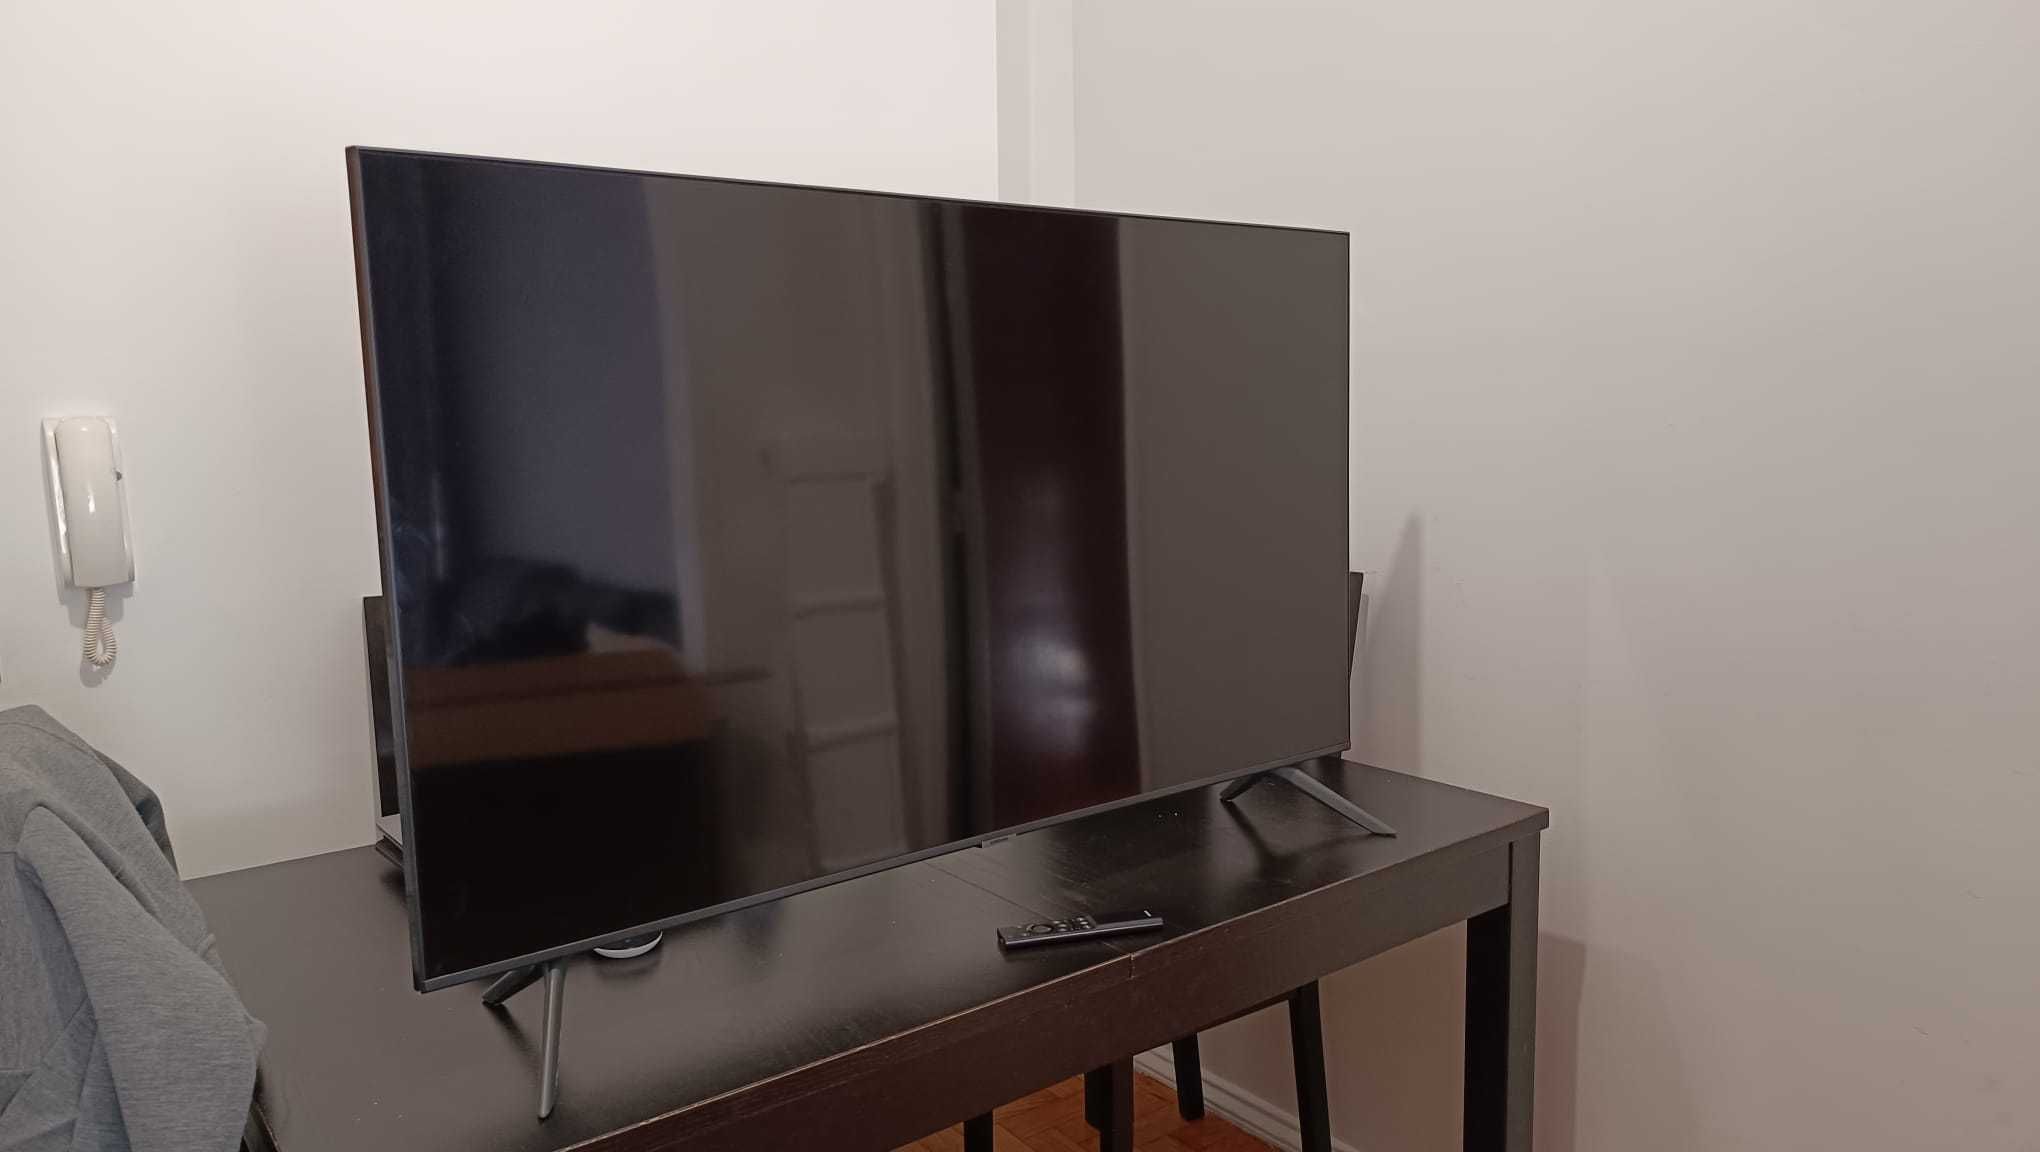 TV Samsung UHD 50" Smart quase NOVA NA CAIXA (leia a descrição)